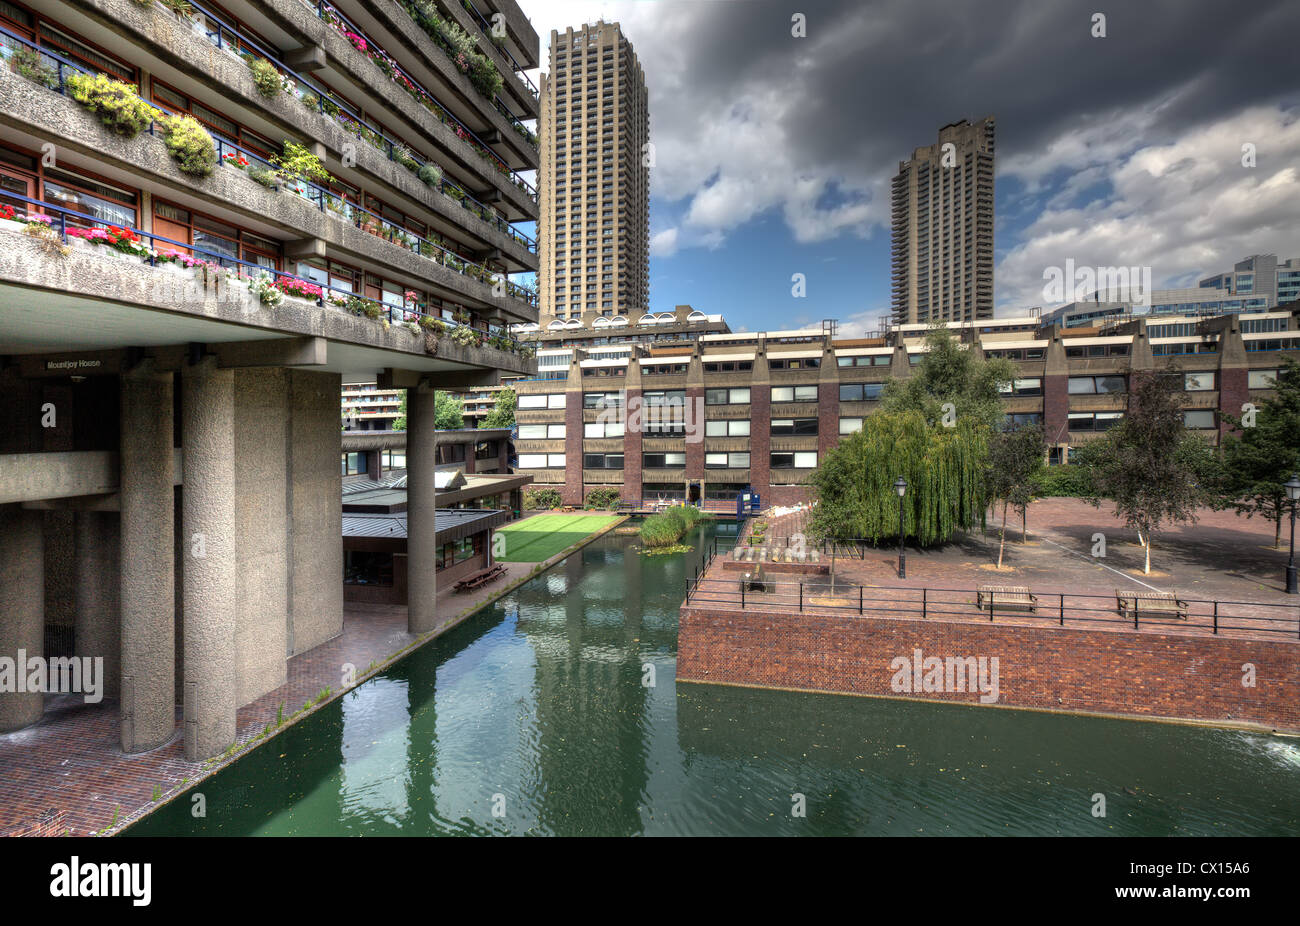 El Barbican Centre en Londres, uno de los más famosos ejemplos de arquitectura Brutalist para ser encontrado. Foto de stock